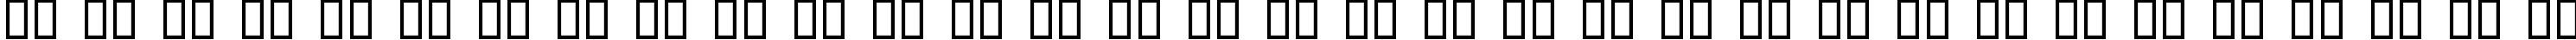 Пример написания русского алфавита шрифтом Jerusalem